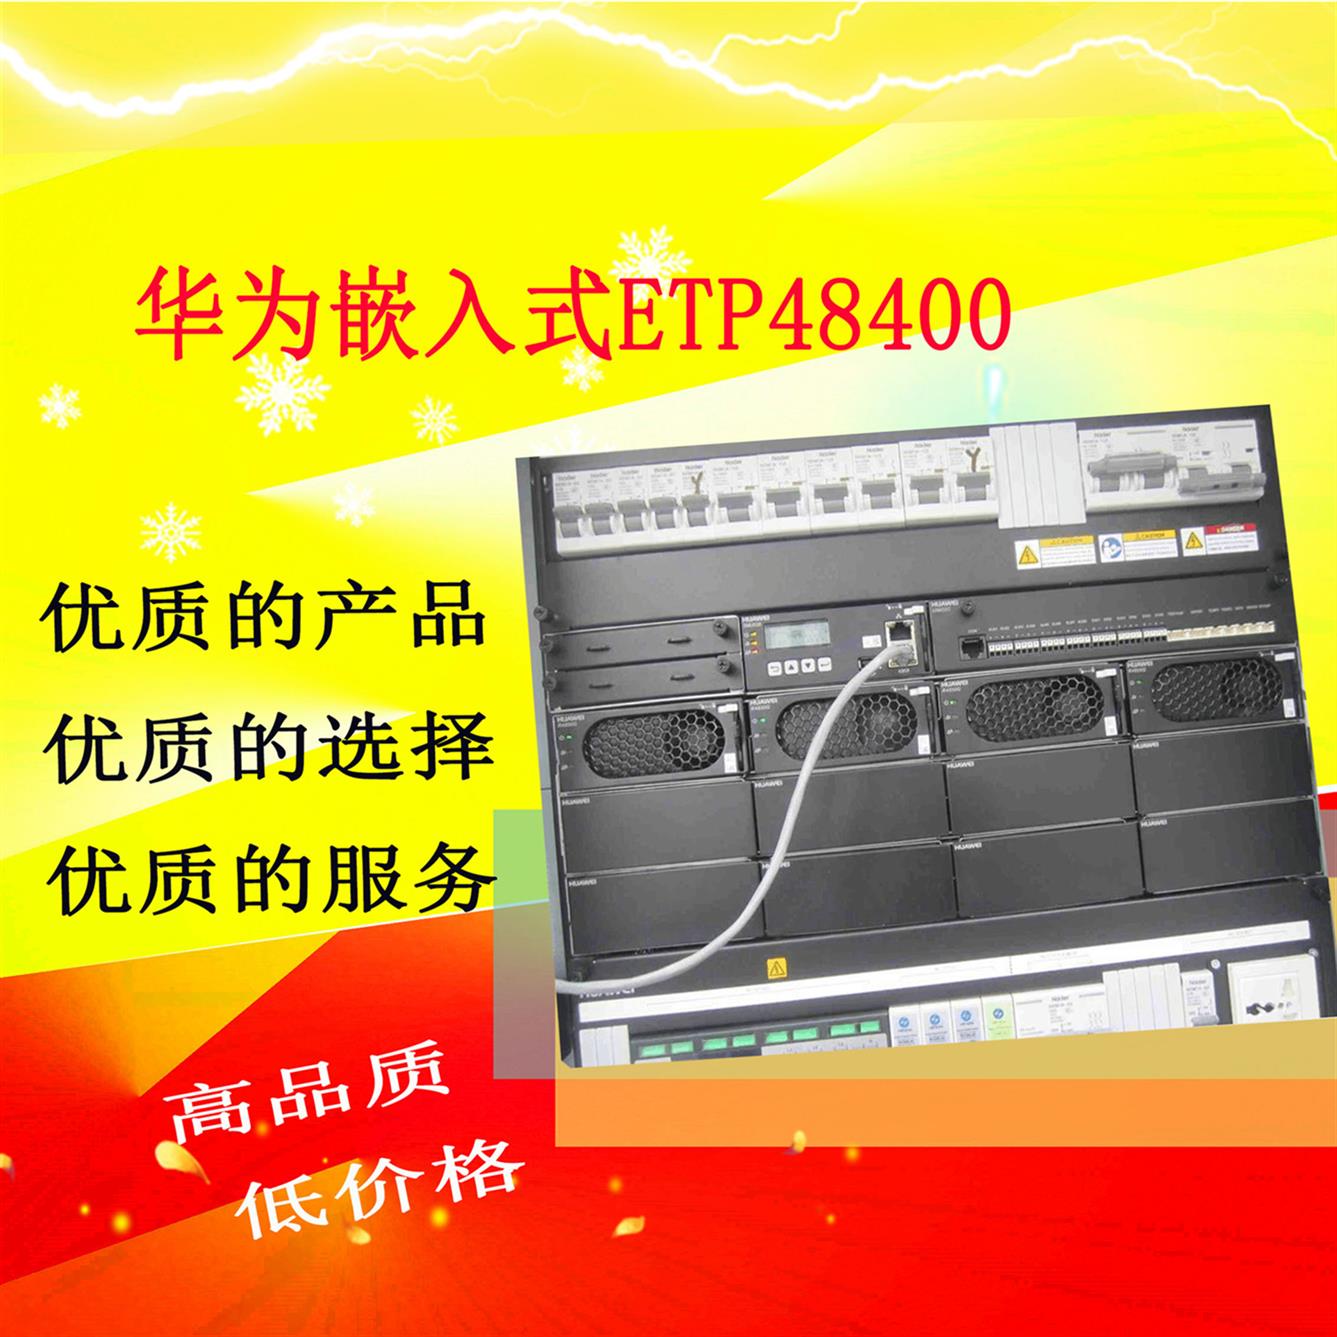 衡阳华为ETP48400A嵌入式电源厂